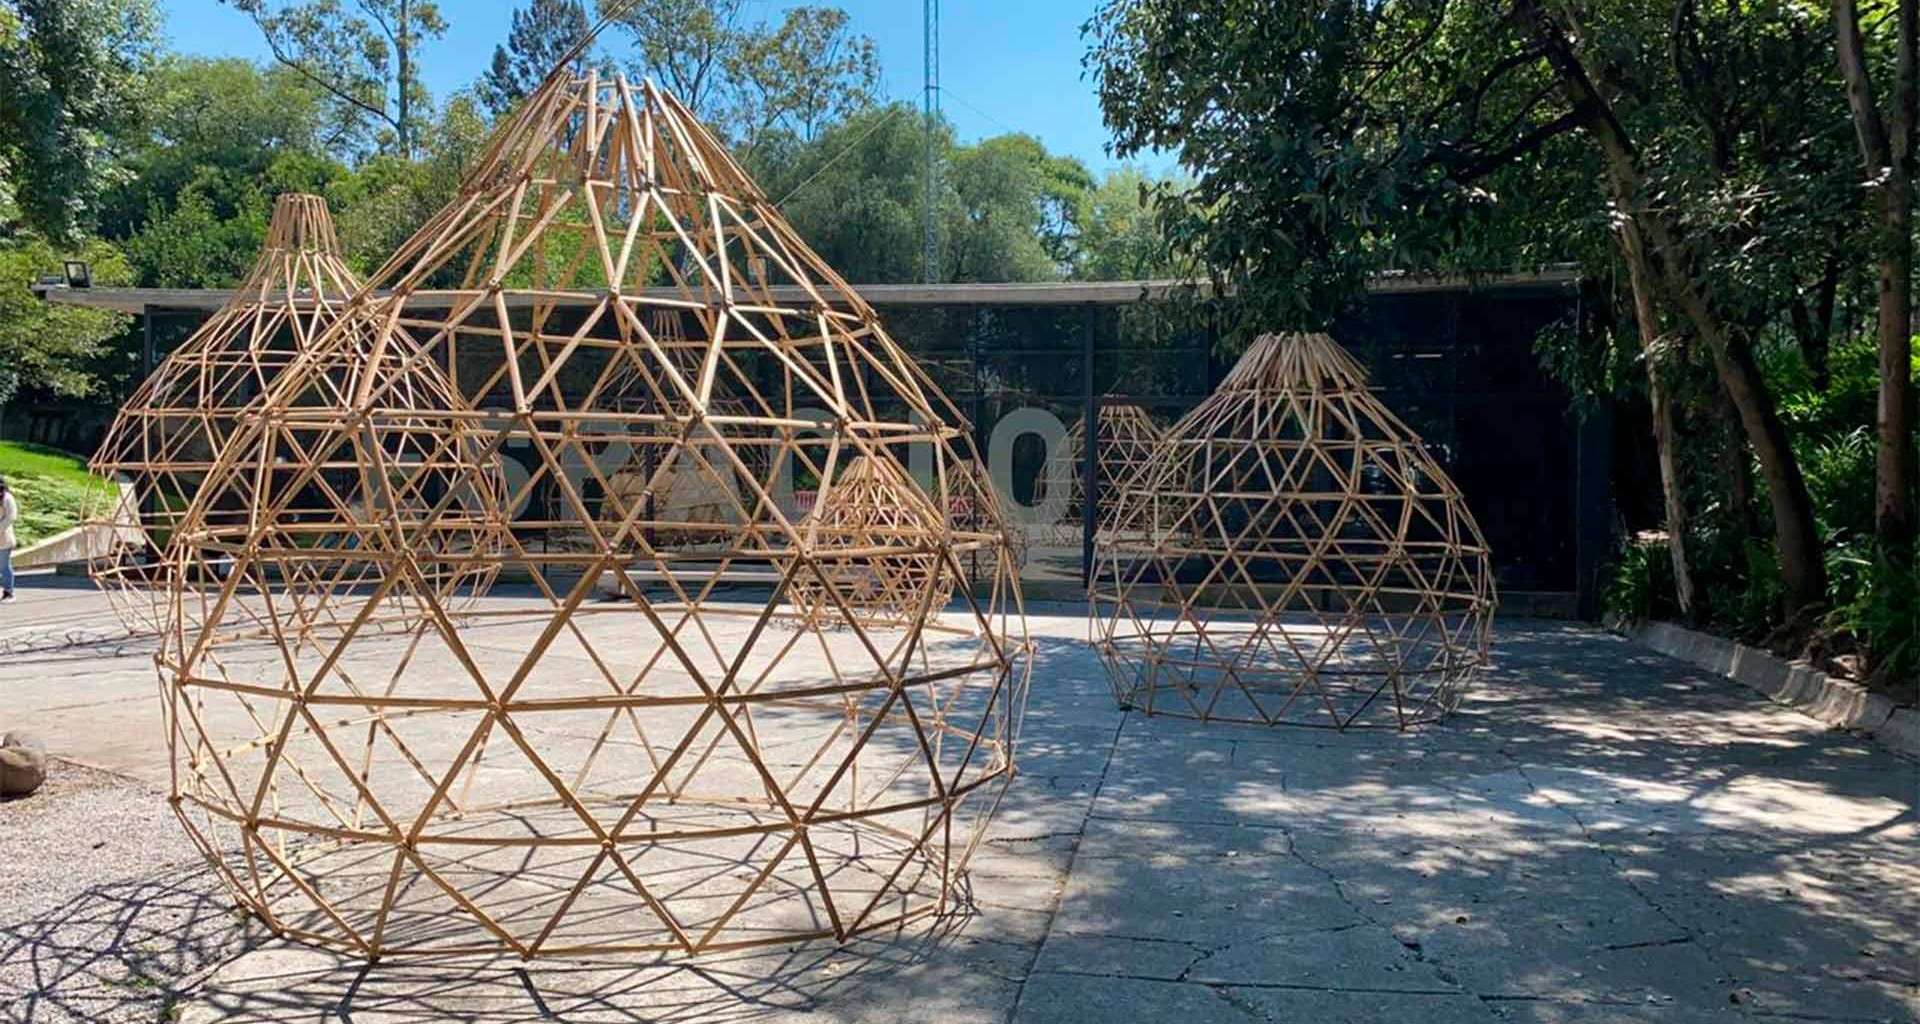 Crean obra arquitectónica a base de bambú y lo exhiben en Chapultepec